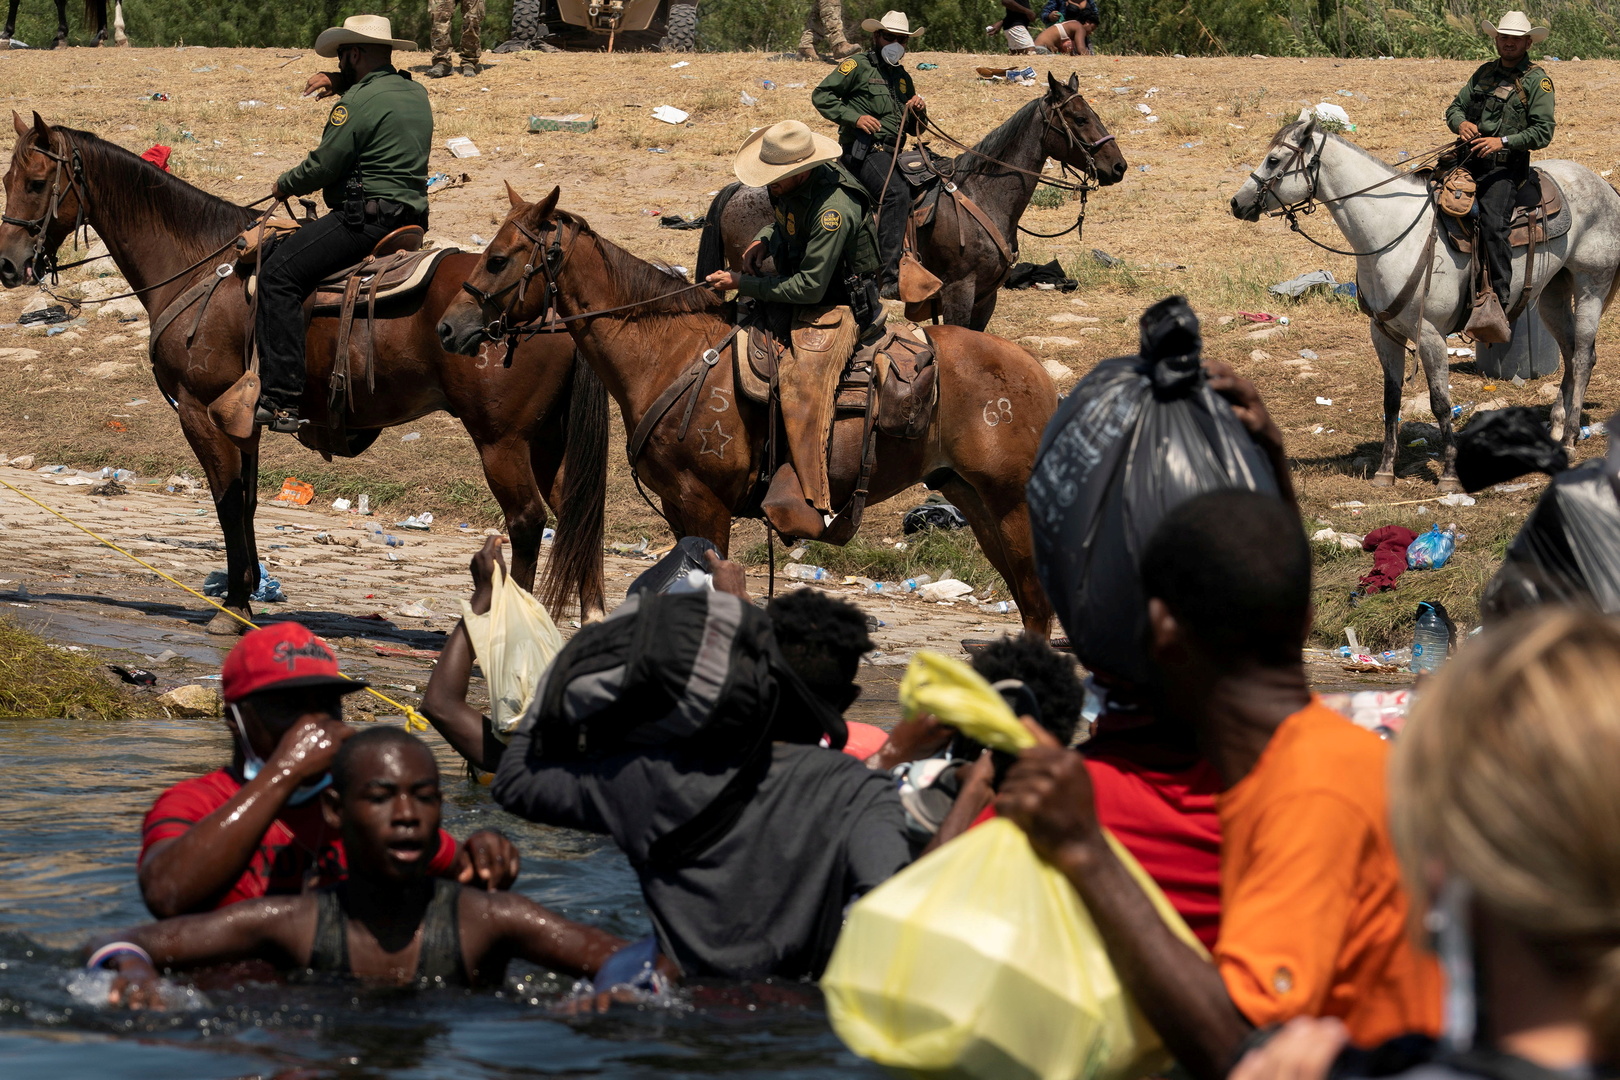 كامالا هاريس عن ملاحقة ضباط الحدود للاجئين من هايتي: هذا أسلوب استخدم ضد الأفارقة زمن العبودية